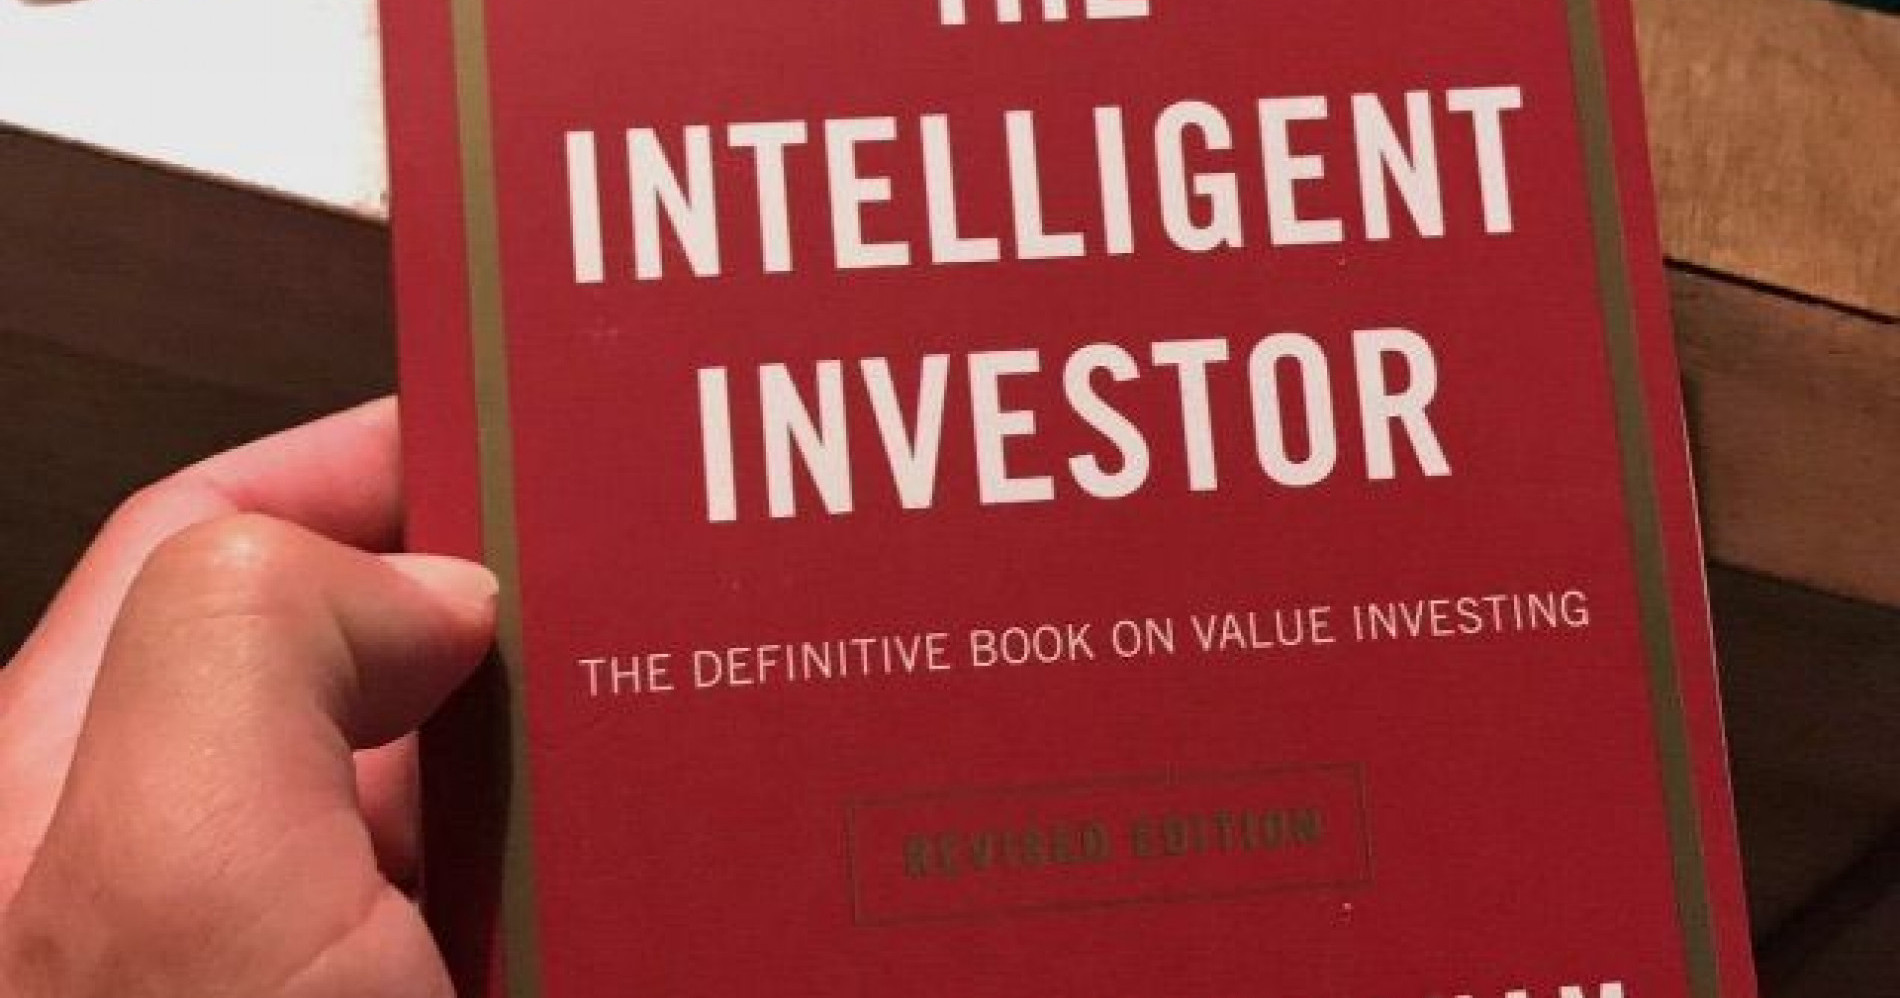 Buku The Intelligent Investor mengajarkan cara bijak berinvestasi (Sumber Gambar: Pinterest)